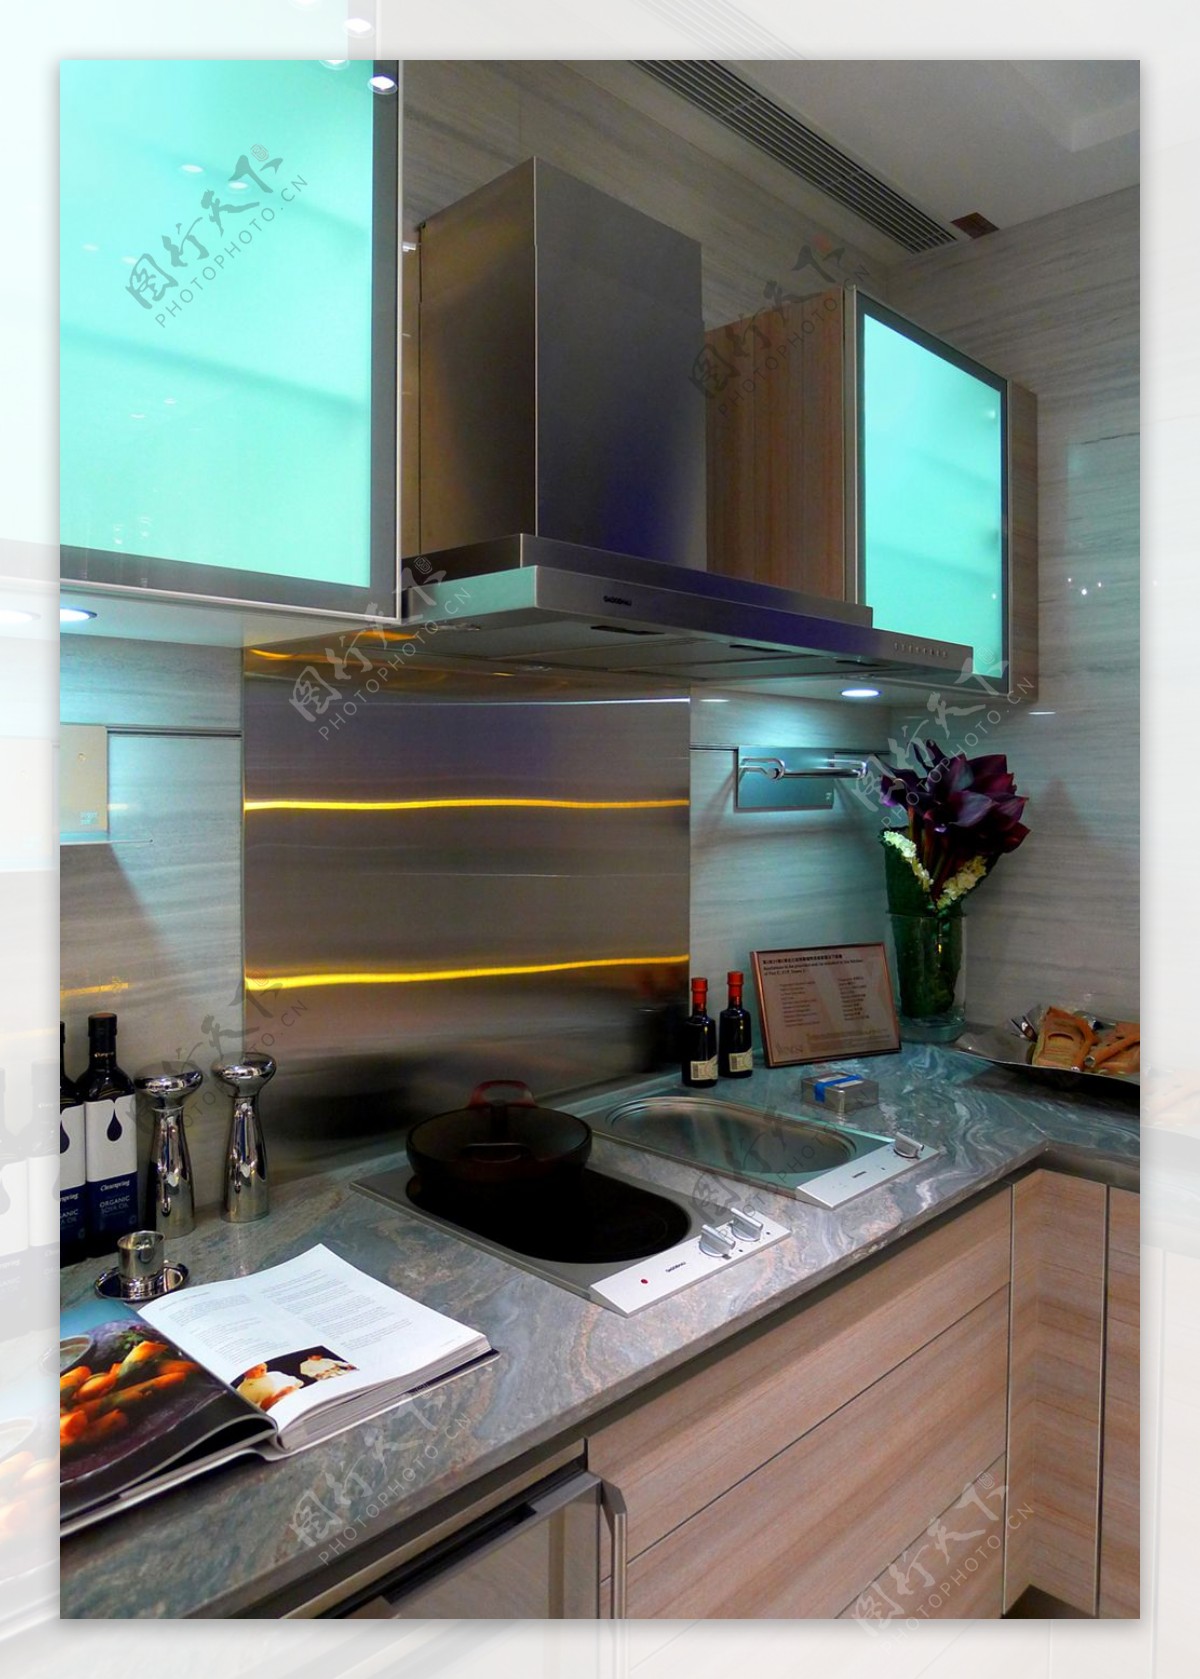 现代简约风室内设计厨房效果图集成灶